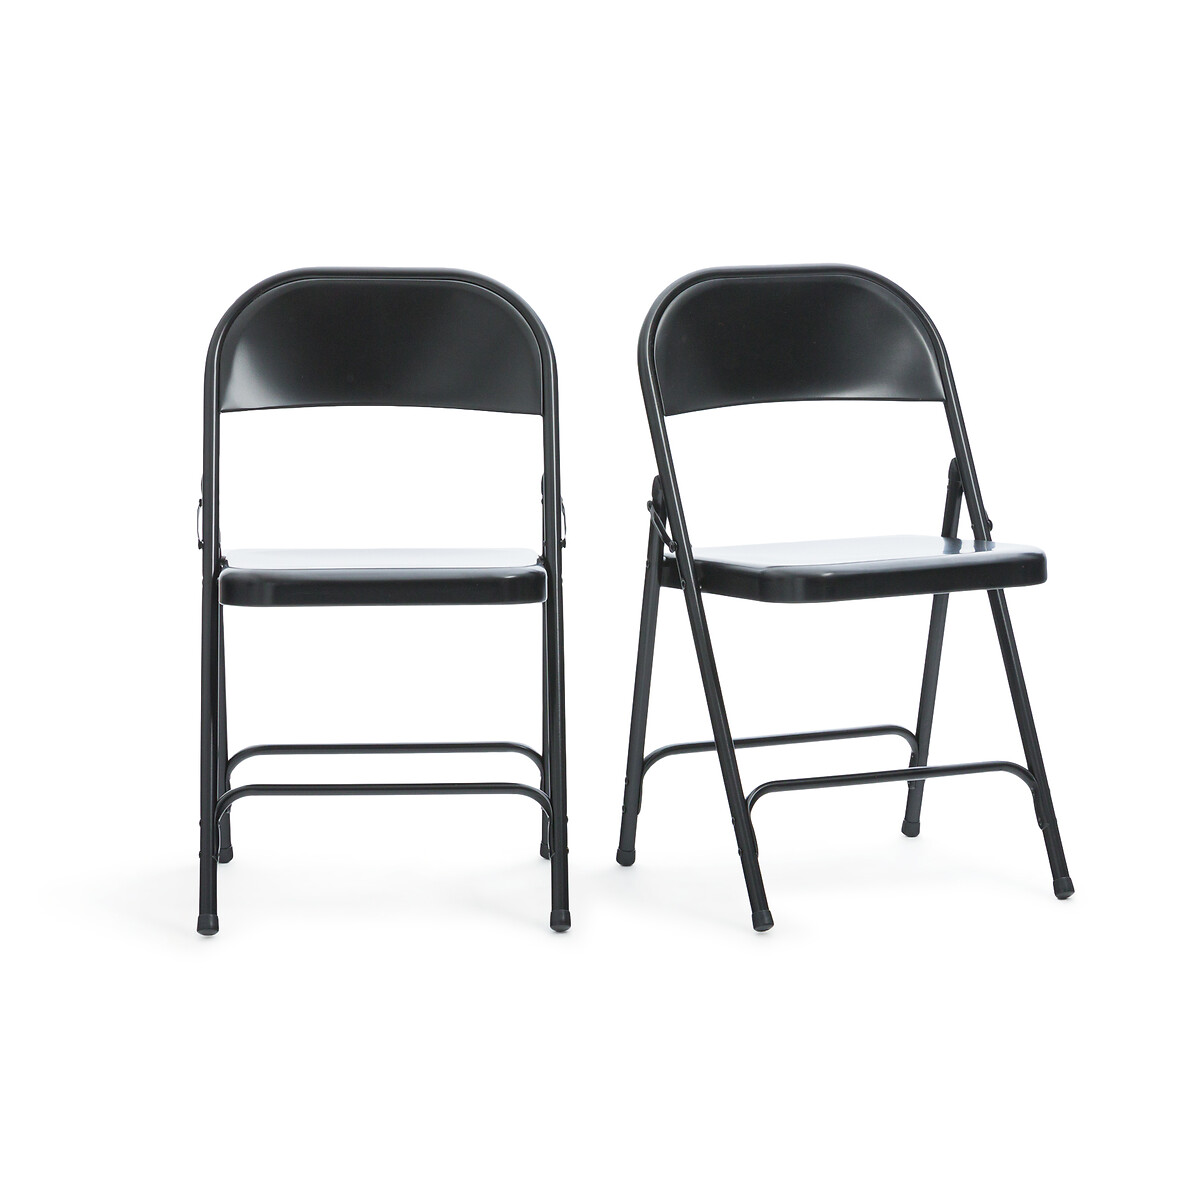 Комплект из двух стульев складных Peseta единый размер черный комплект из двух стульев складных peseta единый размер черный